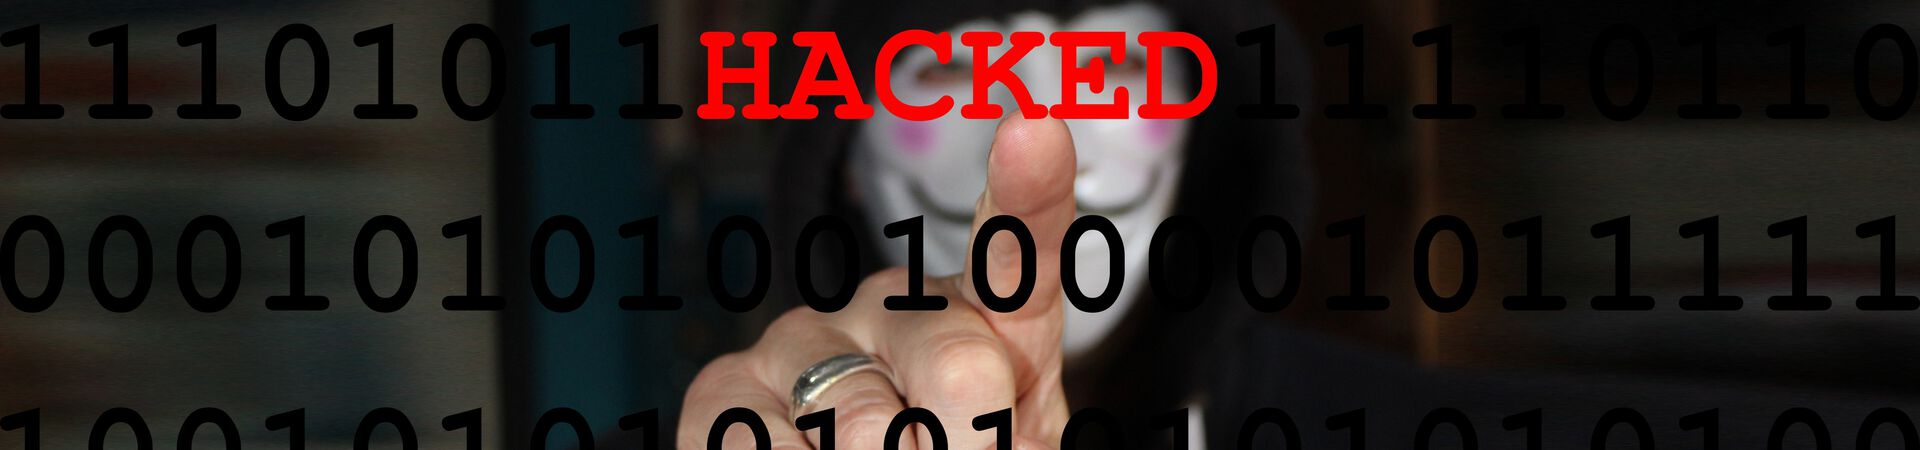 hacker-2851143_Hacked.jpg